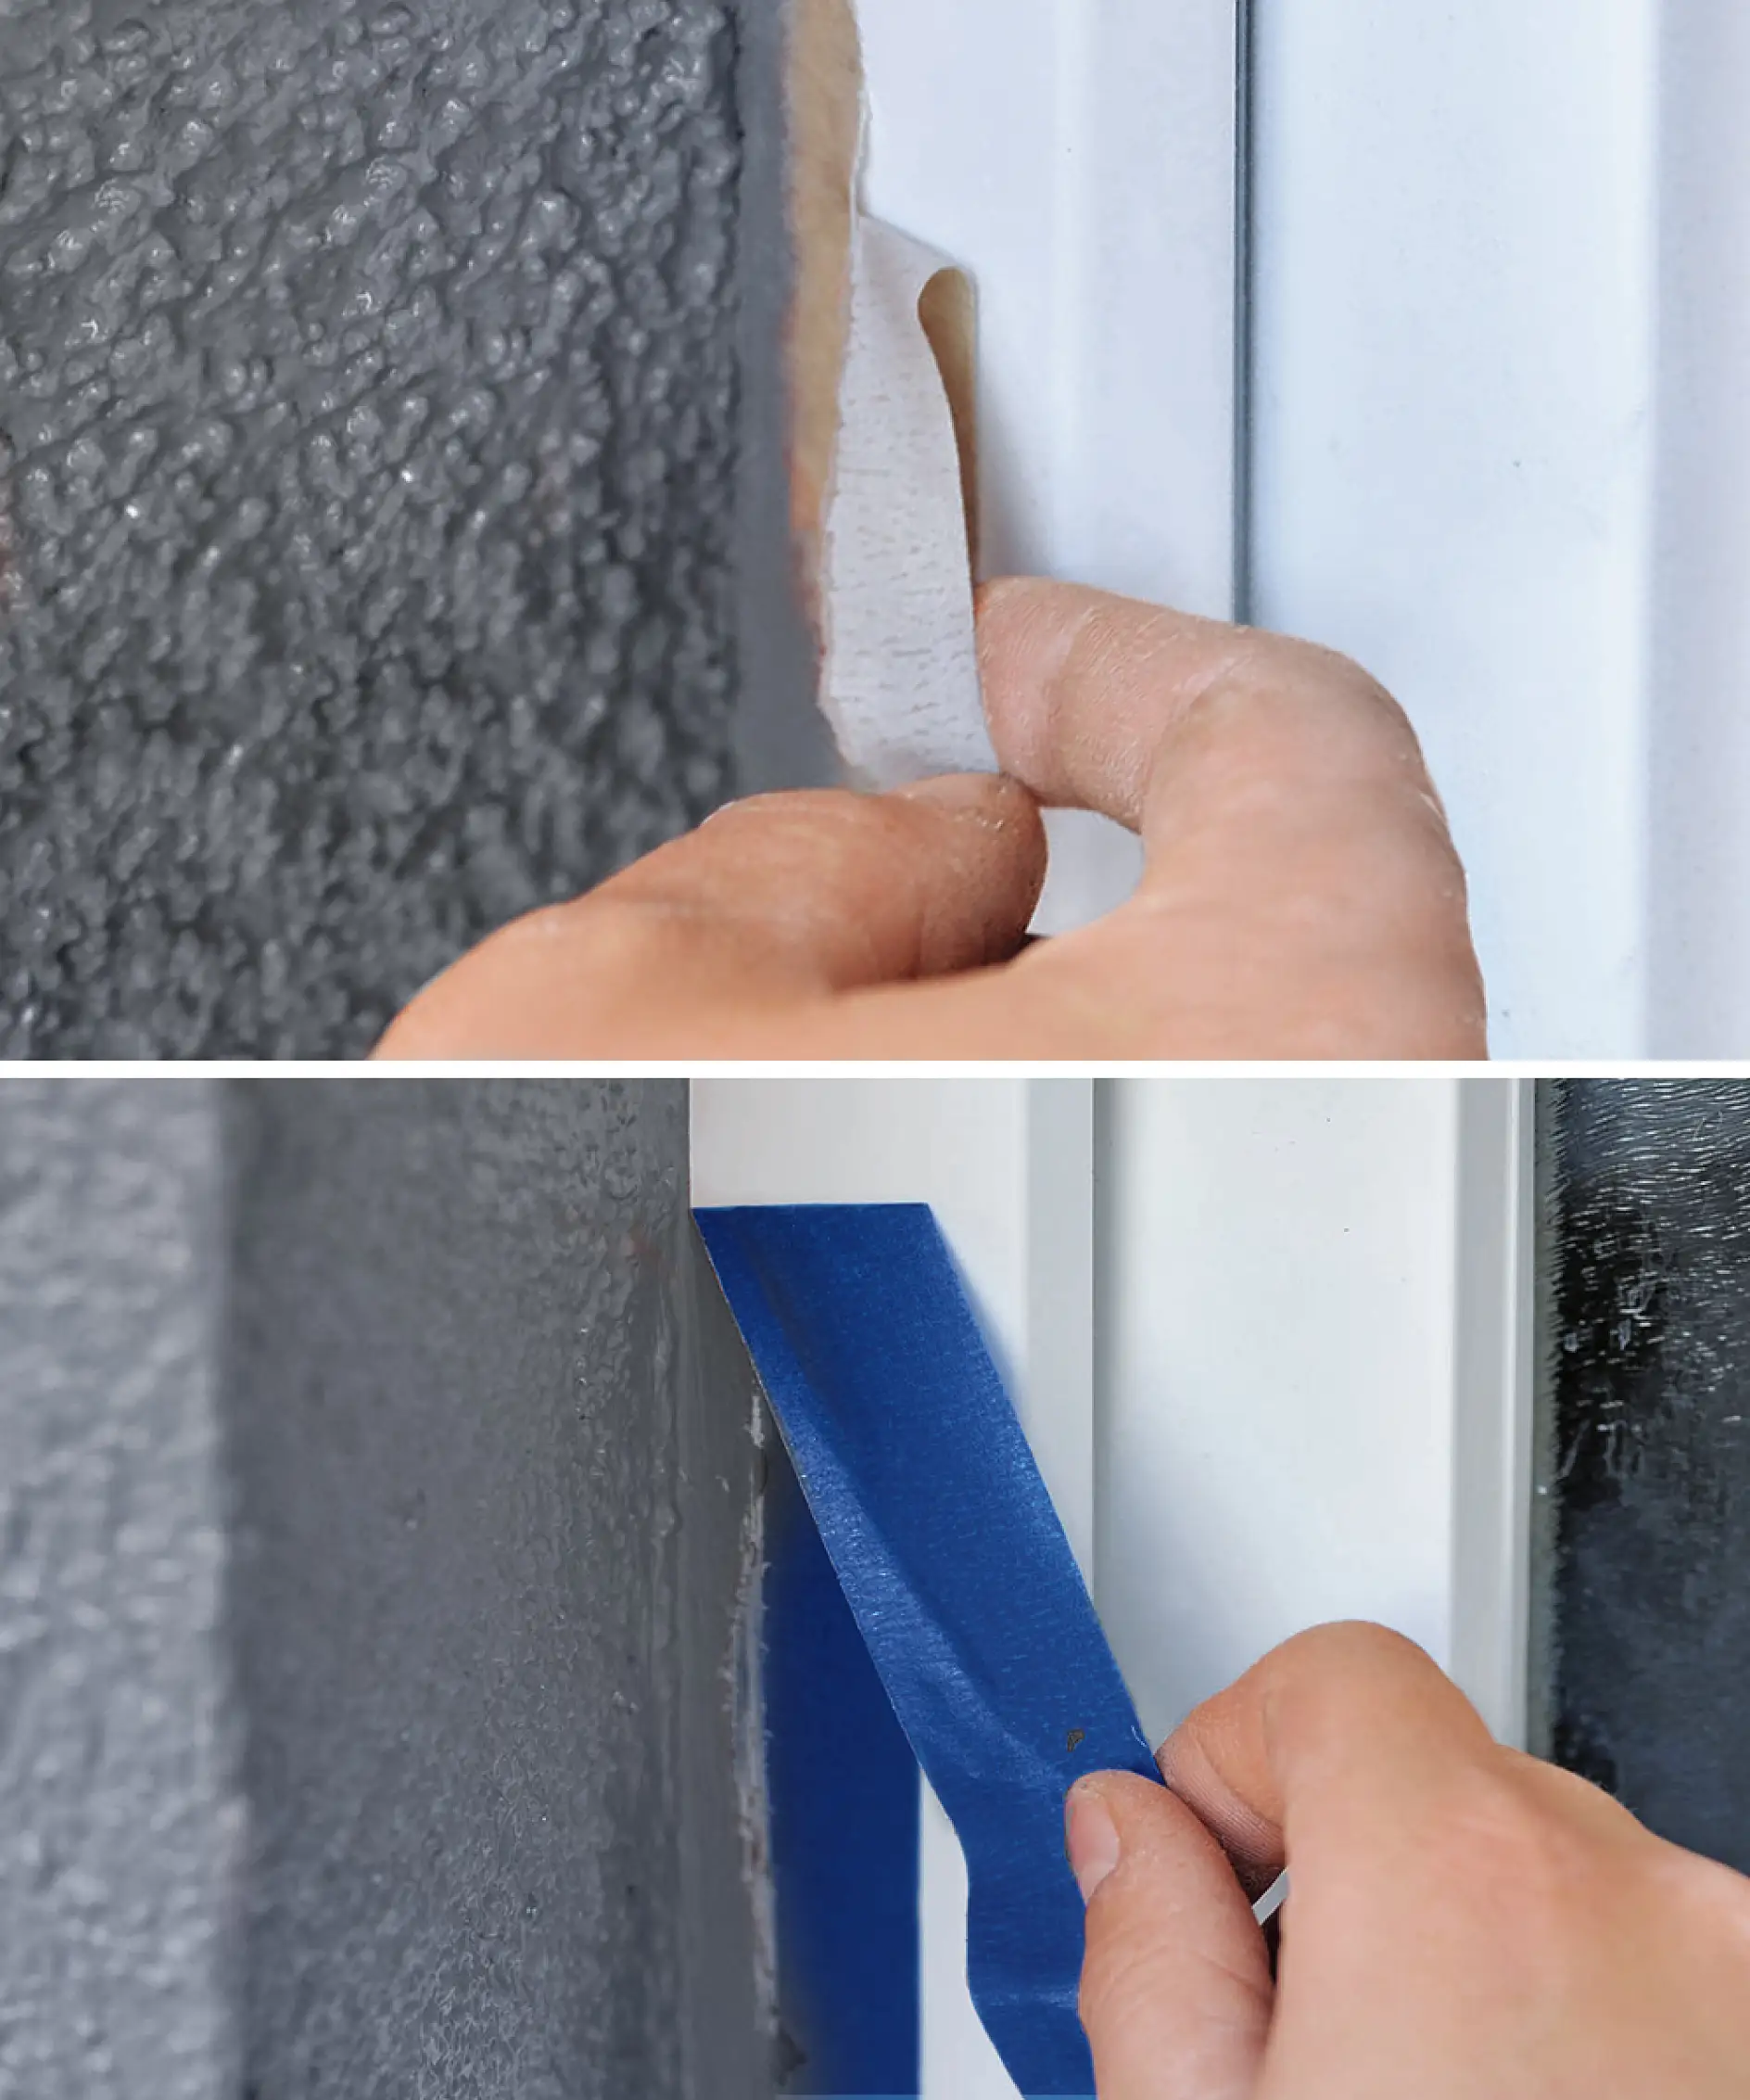 Mascarar janelas de PVC pode ser uma tarefa complicada quando se usa a fita errada.